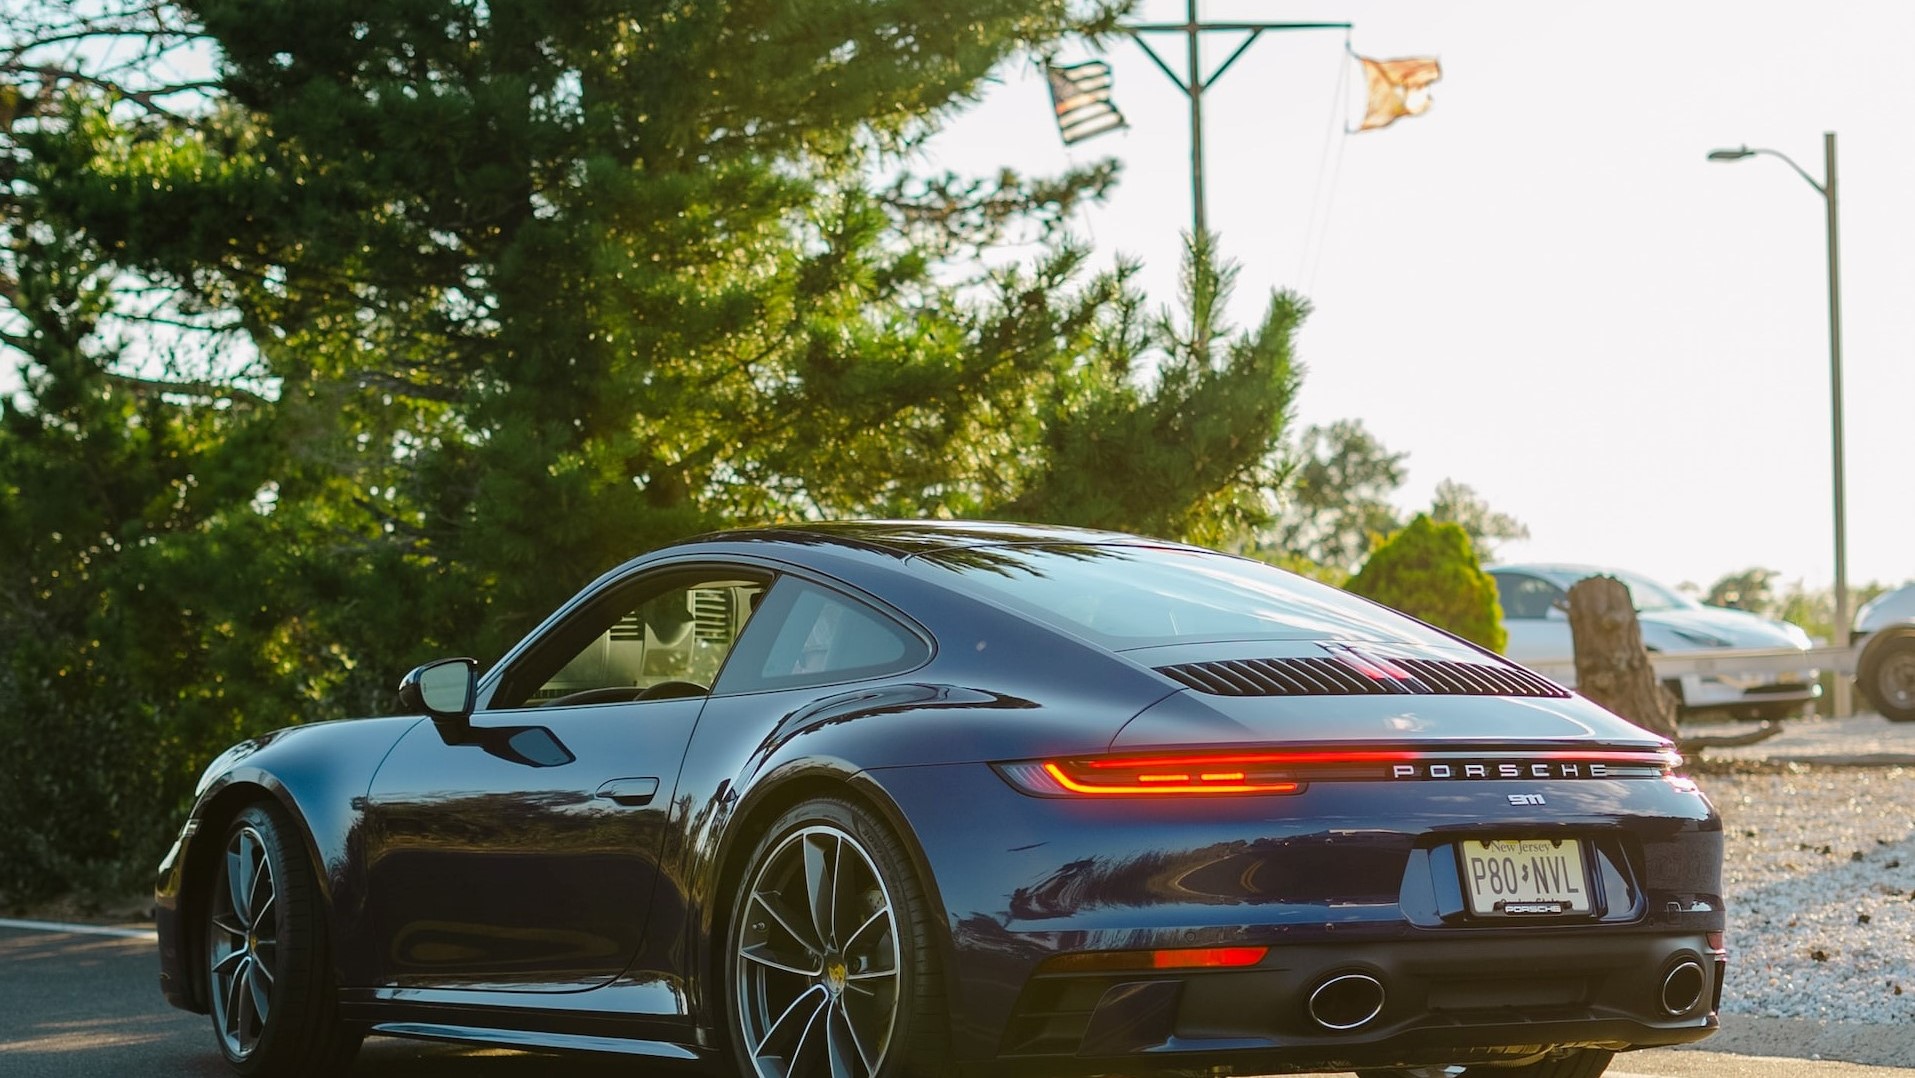 Porsche 911 | Goodwill Car Donations